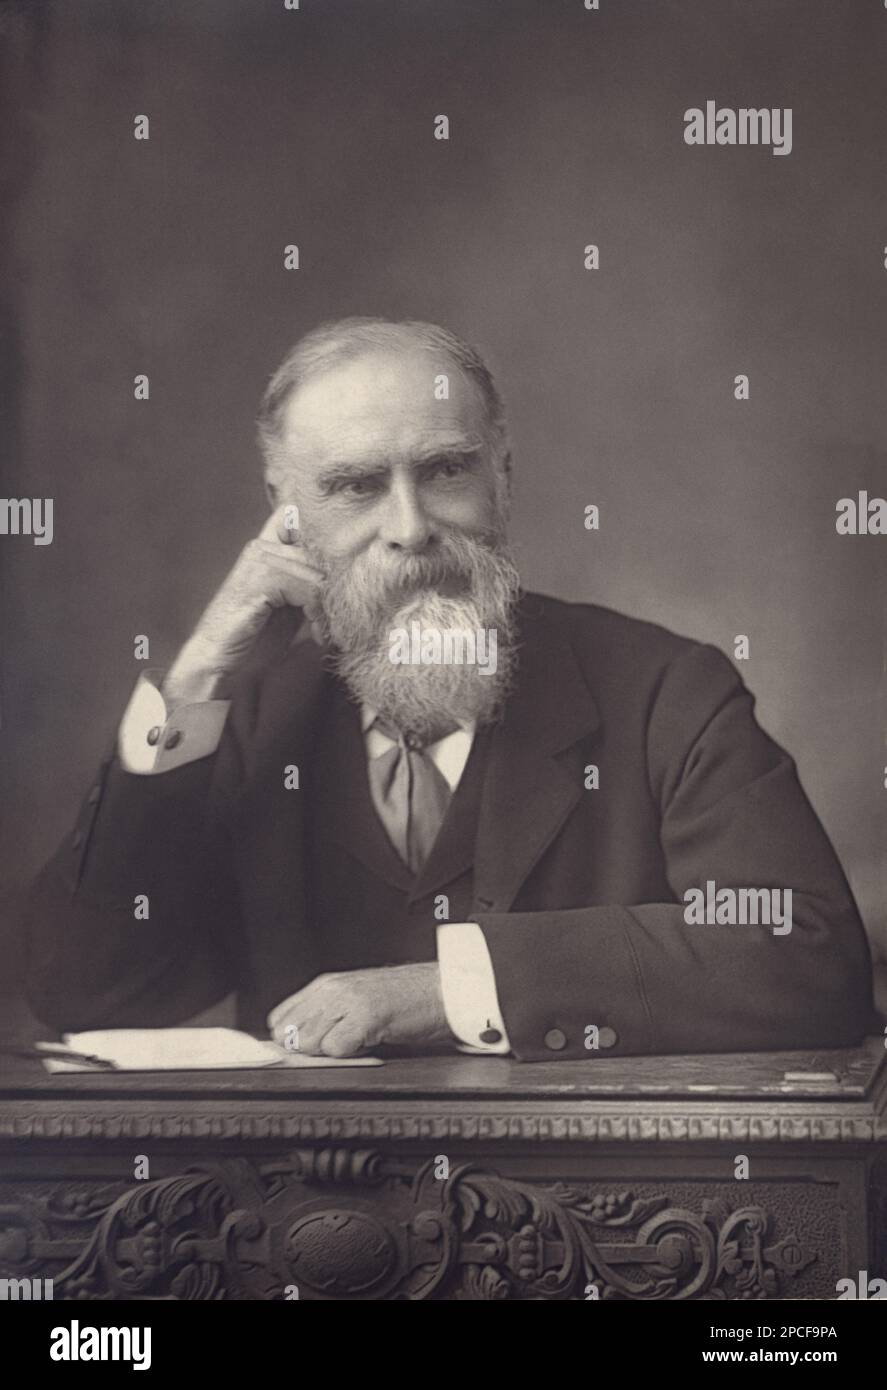 1895 CA : le politicien britannique, juriste et historien l'honorable JAMES BRYCE 1st le vicomte Bryce de Dechmont ( 1838 - 1922 ). Photo de W. & Downey , Londres - POLITICO - POLITICA - POLITIQUE - Grande-Bretagne - foto storiche - foto storica - portrait - ritratto - barbe - barba - cravate - cravatta - uomo anziano vecchio - vieil homme - bureau - scrivania - penseur - pensatore STORICO - GIURISTA - GIURISPRUDENZA - AVVOCATO - NOBILI - Nobiltà INGLESE - noblesse britannique ---- Archivio GBB Banque D'Images